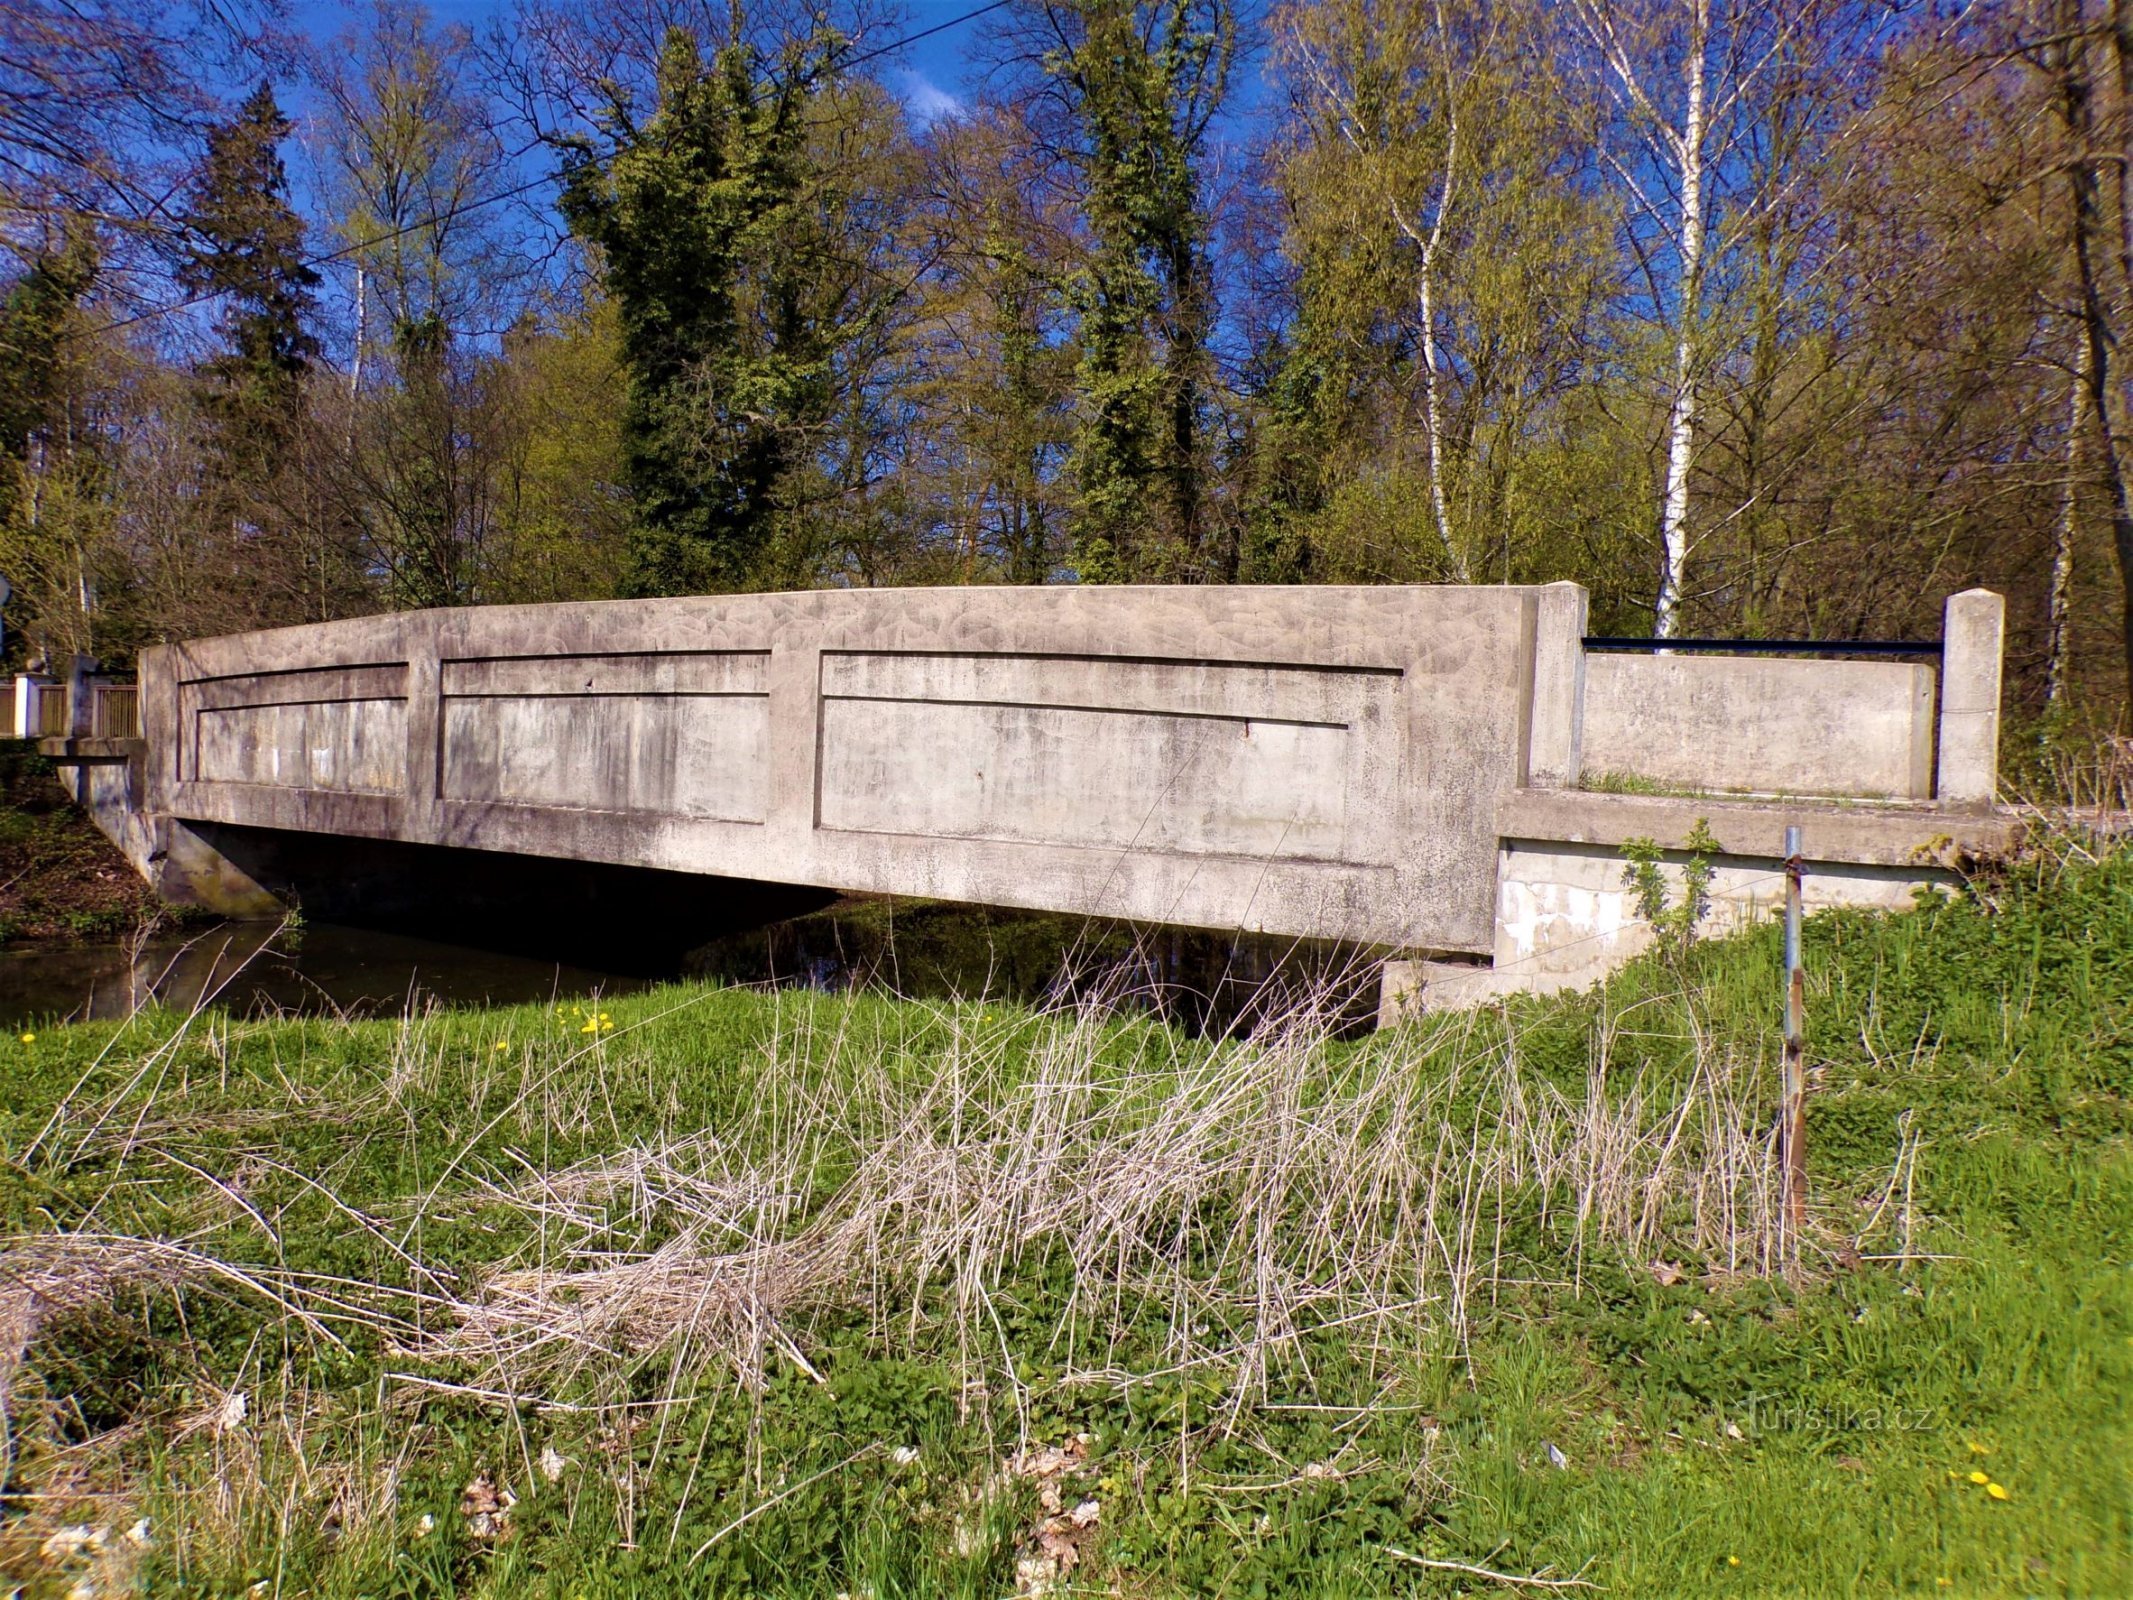 Ponte de concreto, a chamada ponte do meio (Skřivany, 30.4.2021/XNUMX/XNUMX)